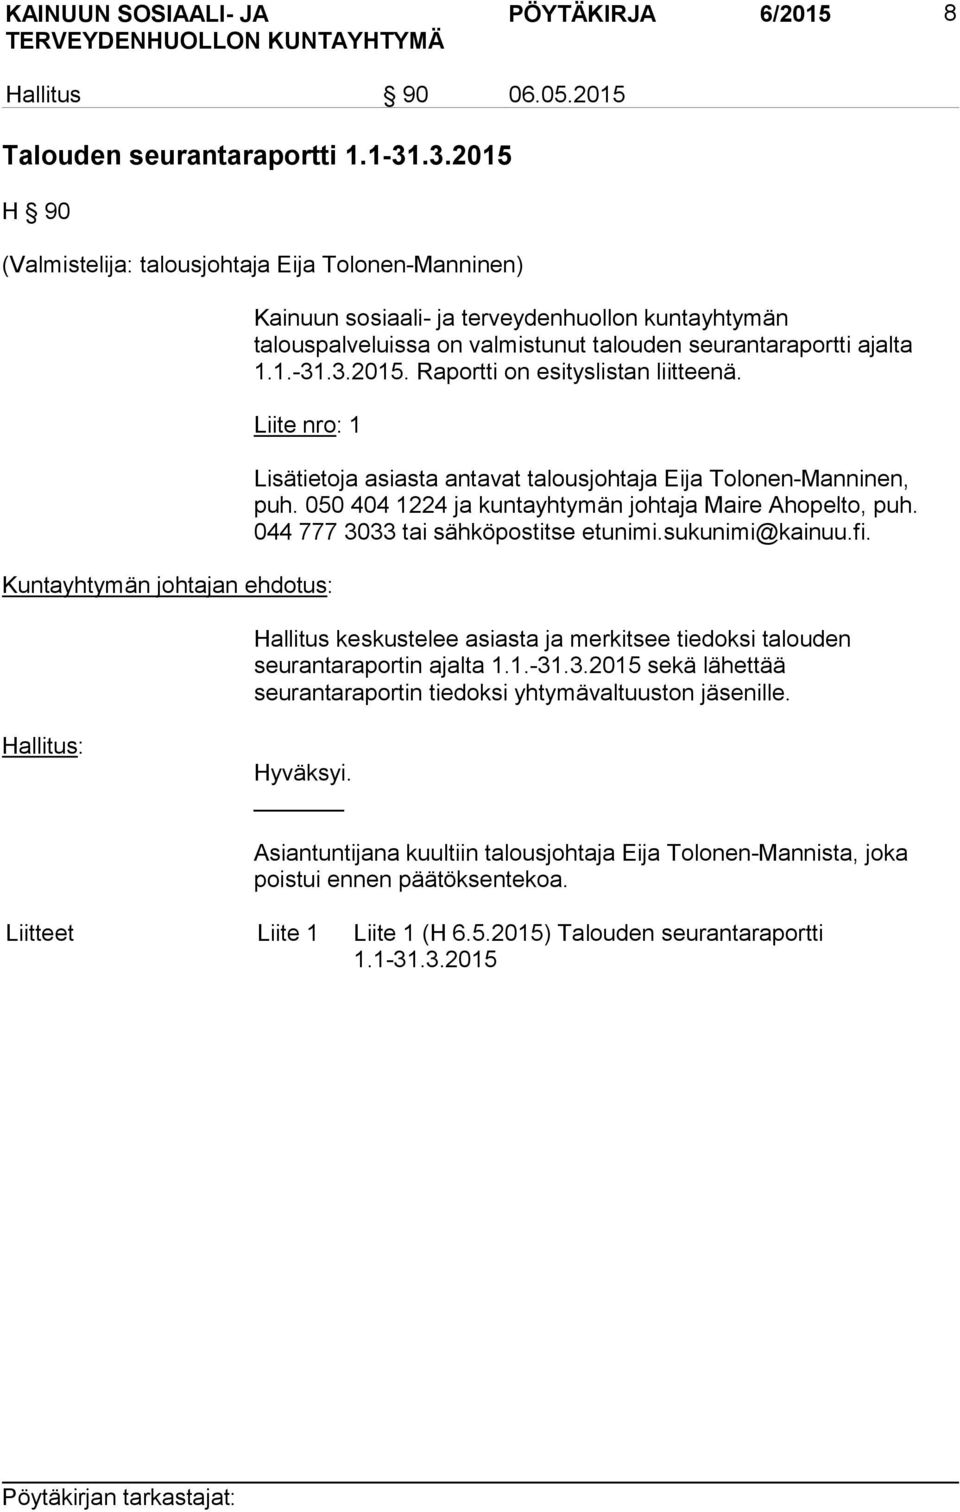 Liite nro: 1 Kuntayhtymän johtajan ehdotus: Lisätietoja asiasta antavat talousjohtaja Eija Tolonen-Manninen, puh. 050 404 1224 ja kuntayhtymän johtaja Maire Ahopelto, puh.